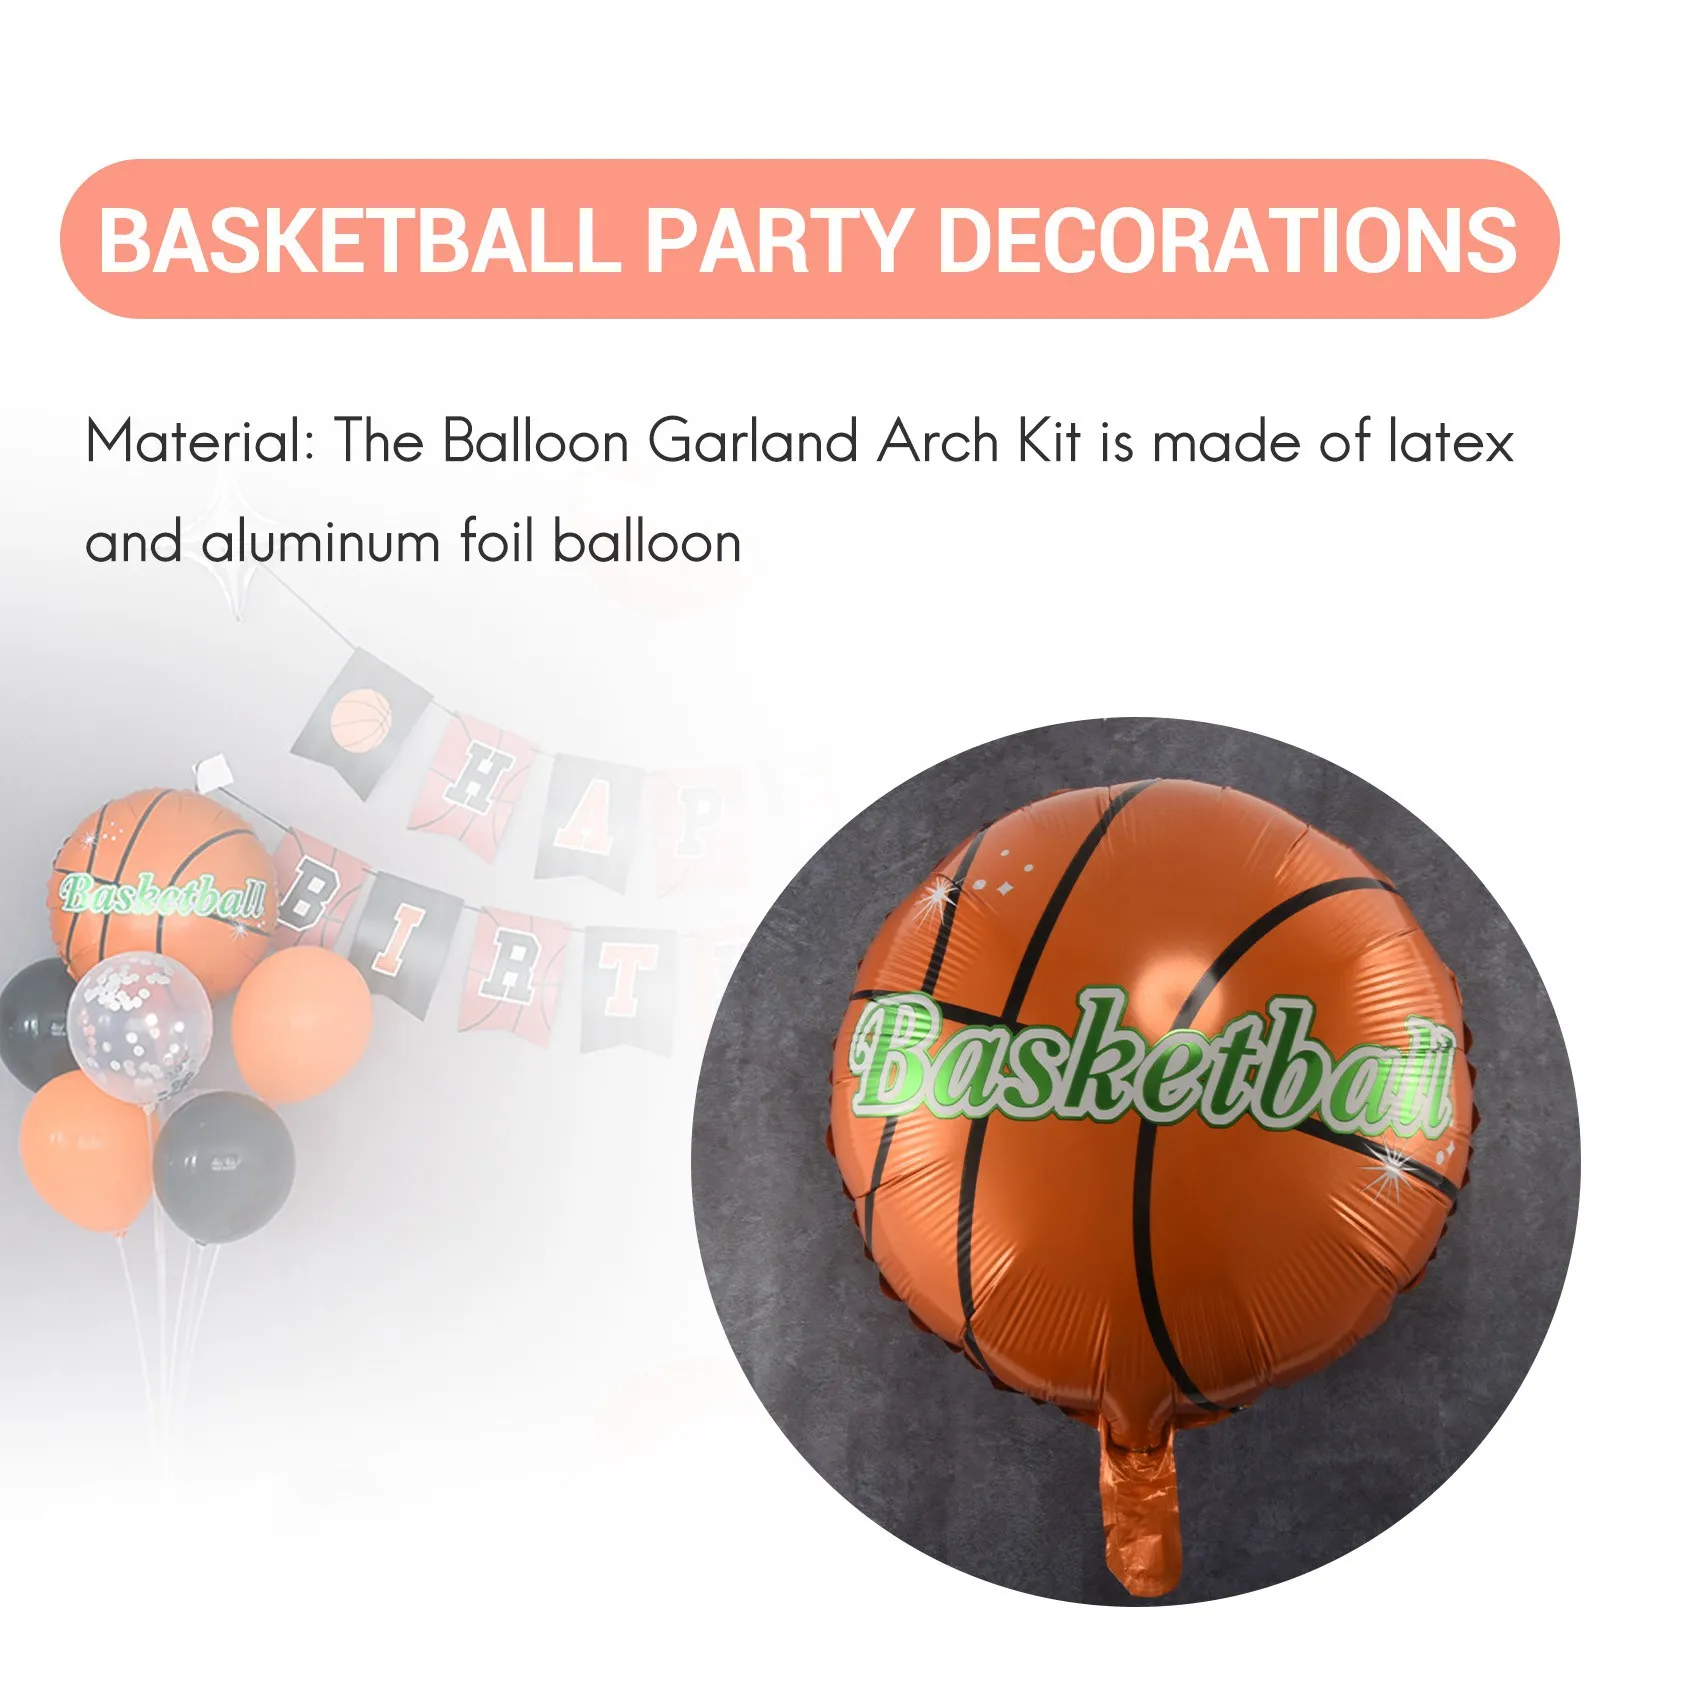 110 ШТ. Набор воздушных шаров с гирляндой и аркой на баскетбольную тематику, черно-оранжевые воздушные шары для баскетбола, спортивный тематический декор, принадлежности для вечеринок